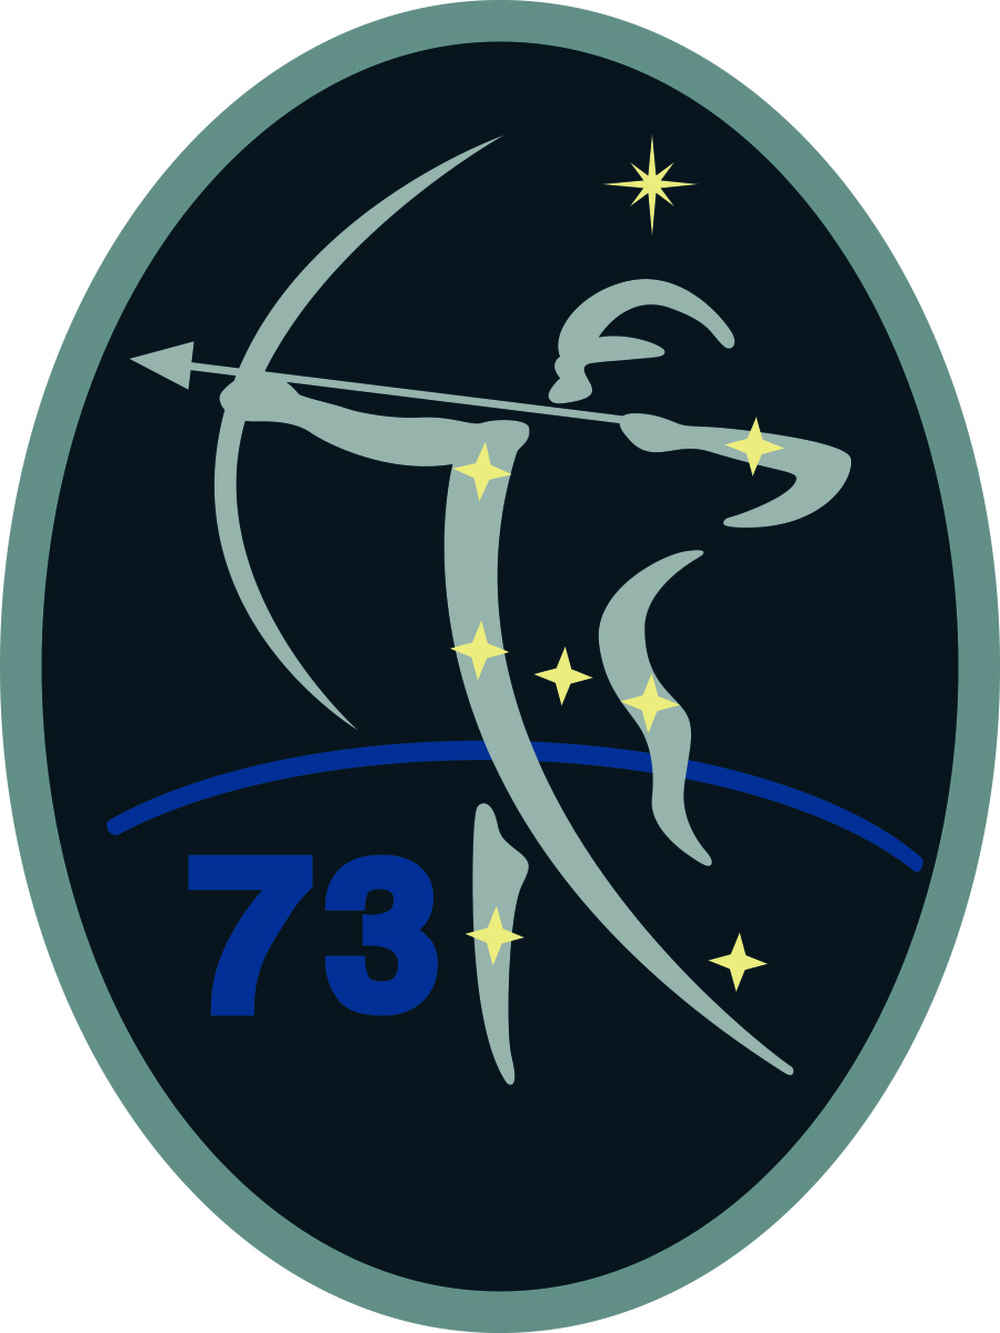 73 ISRS - Official Emblem